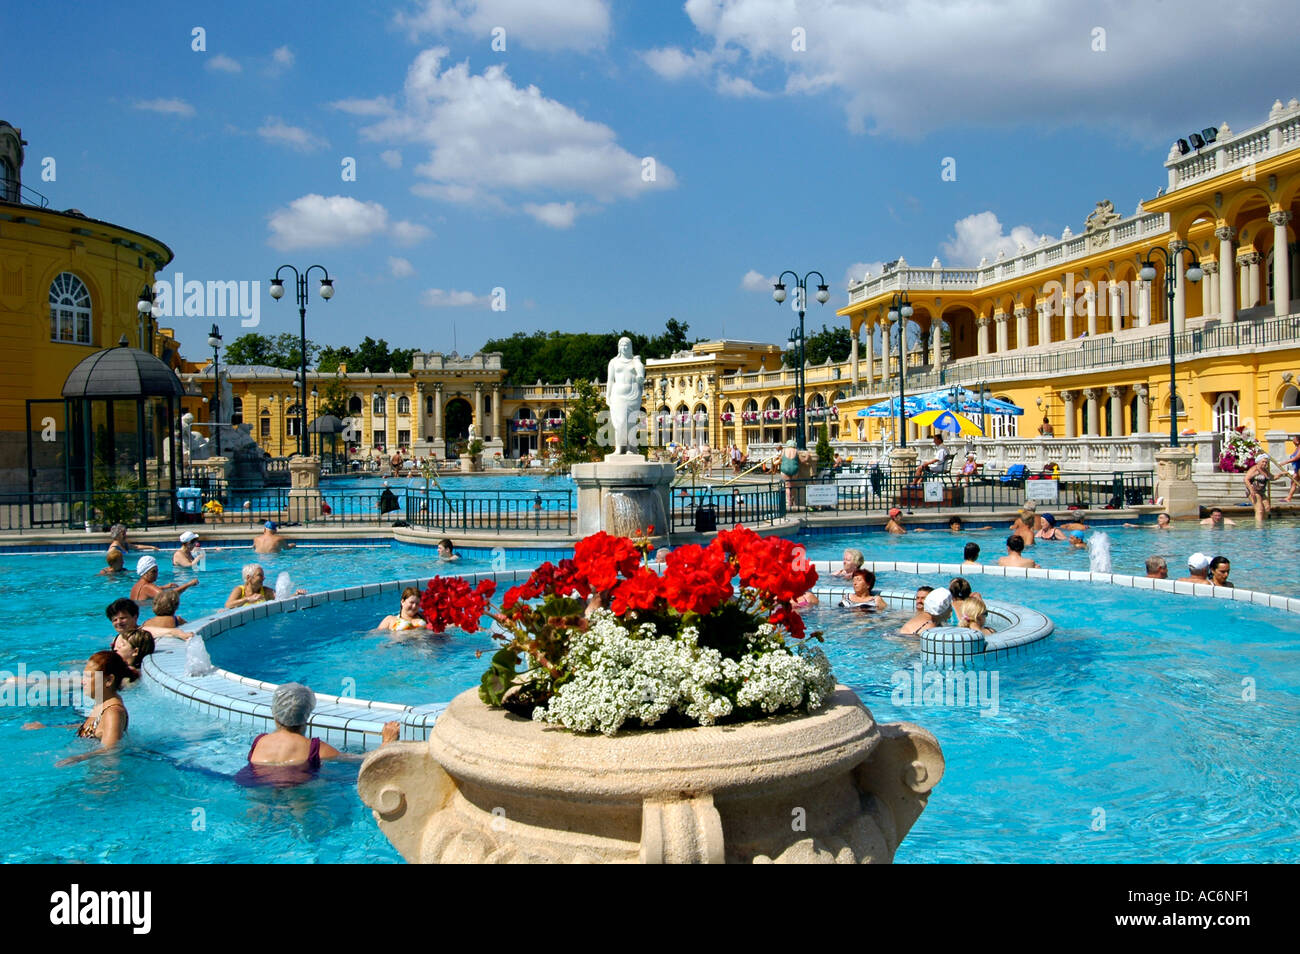 Les gens se baigner dans la piscine en plein air Piscine médicinales des anciennes thermes Szechenyi spa situé dans le parc de la ville à Budapest Hongrie Banque D'Images